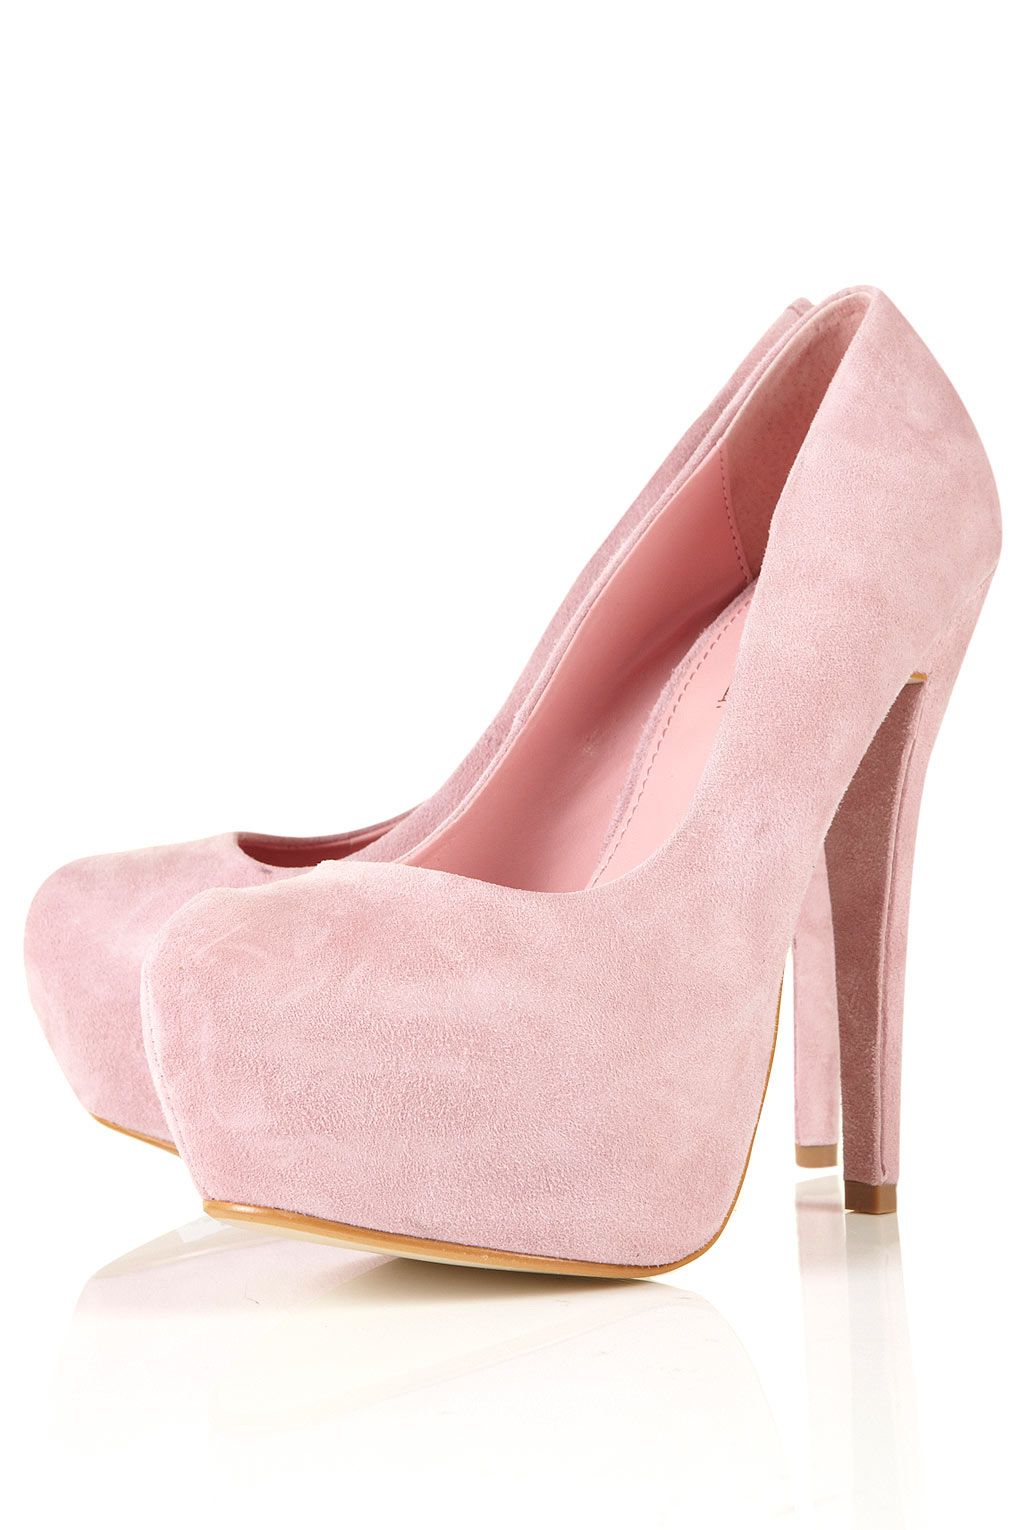 Pink booties heels